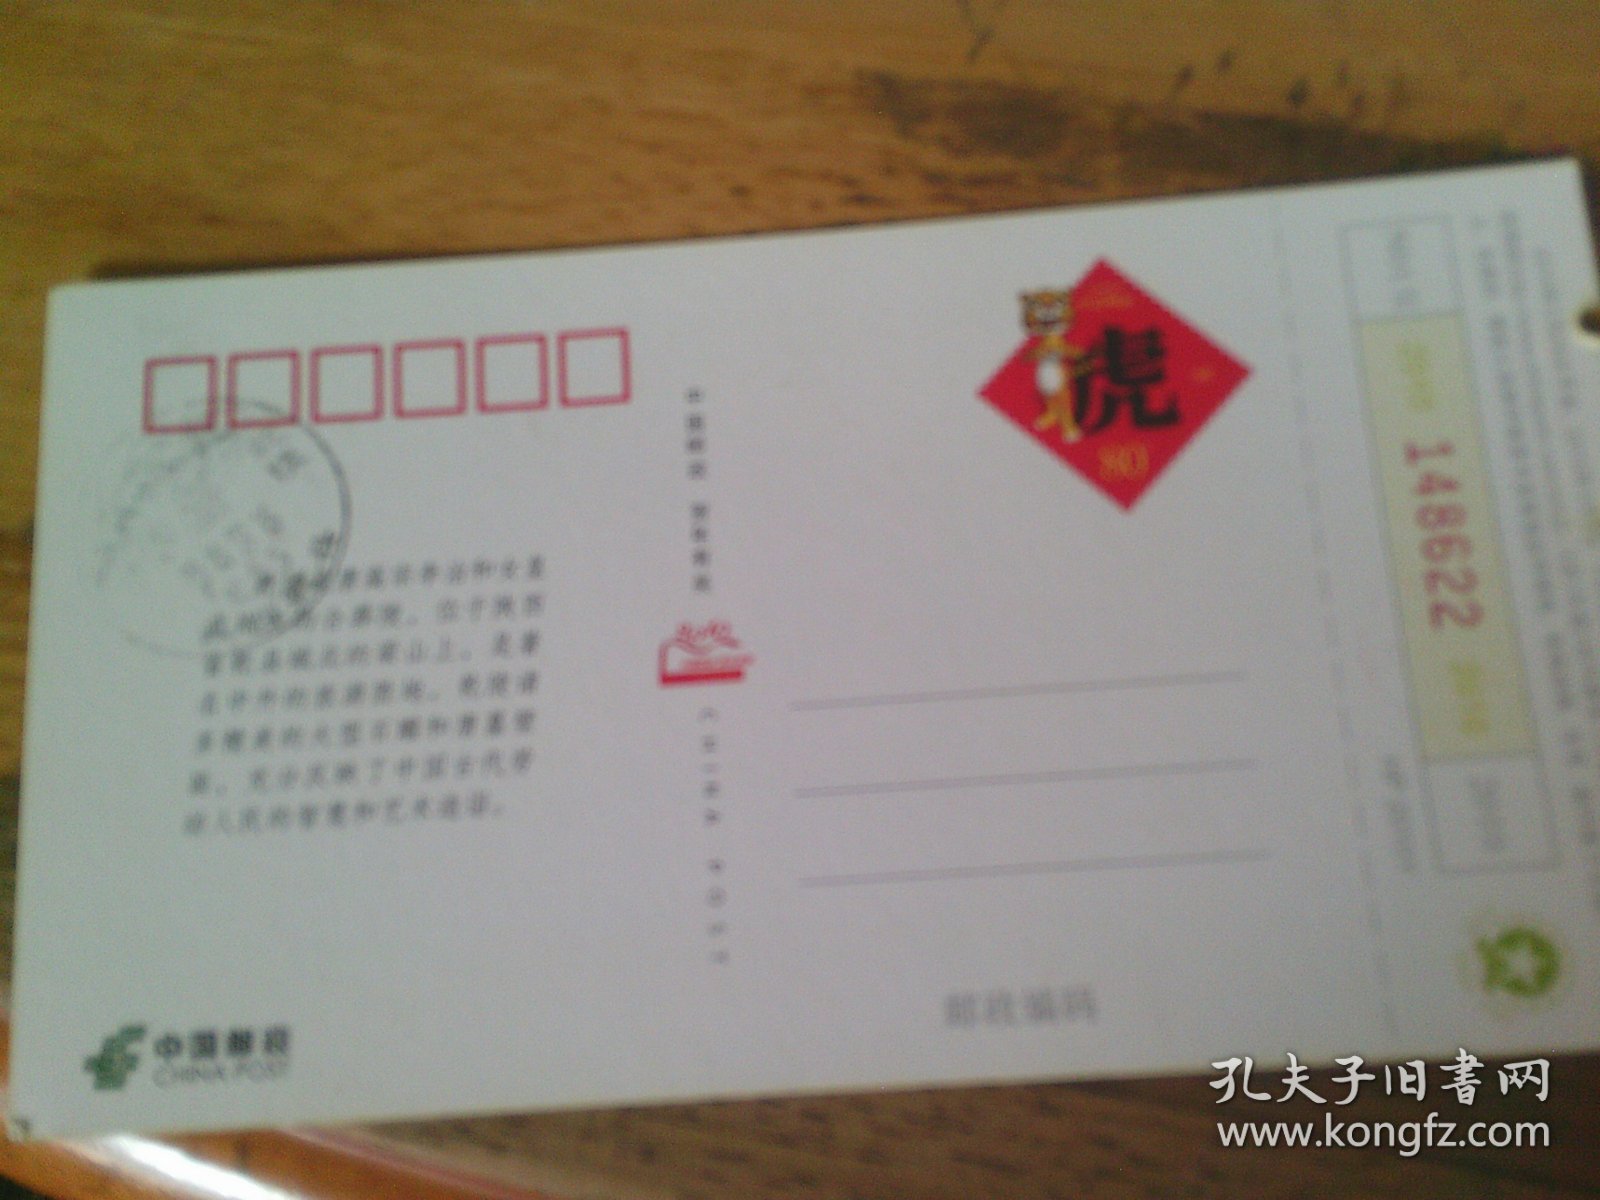 门票   中国乾陵邮资门票 半价票 24元券 背为虎年邮票